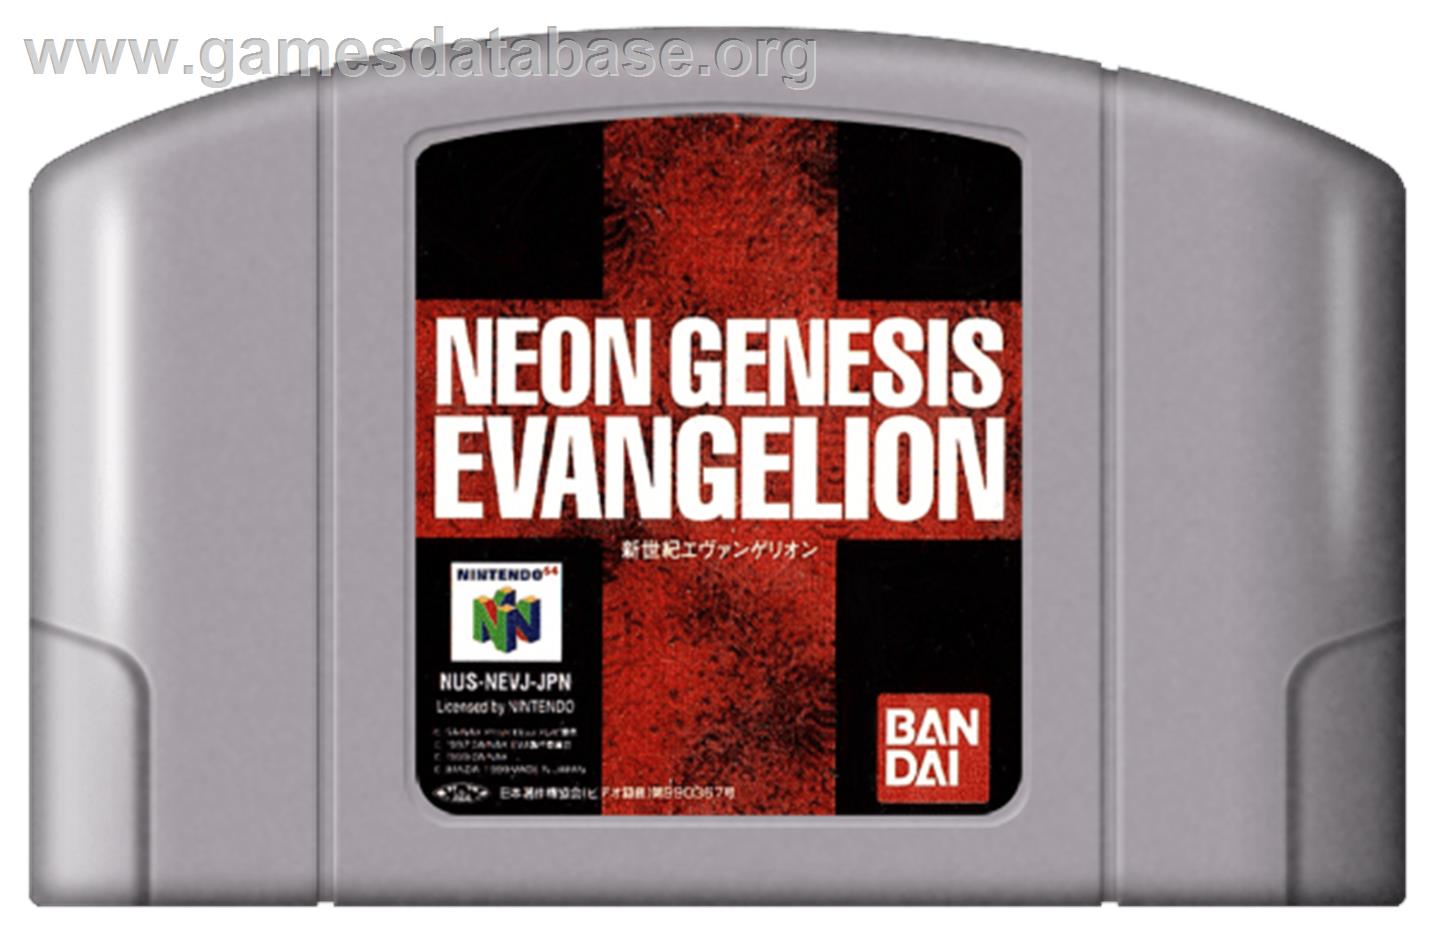 Neon Genesis Evangelion - Nintendo N64 - Artwork - Cartridge